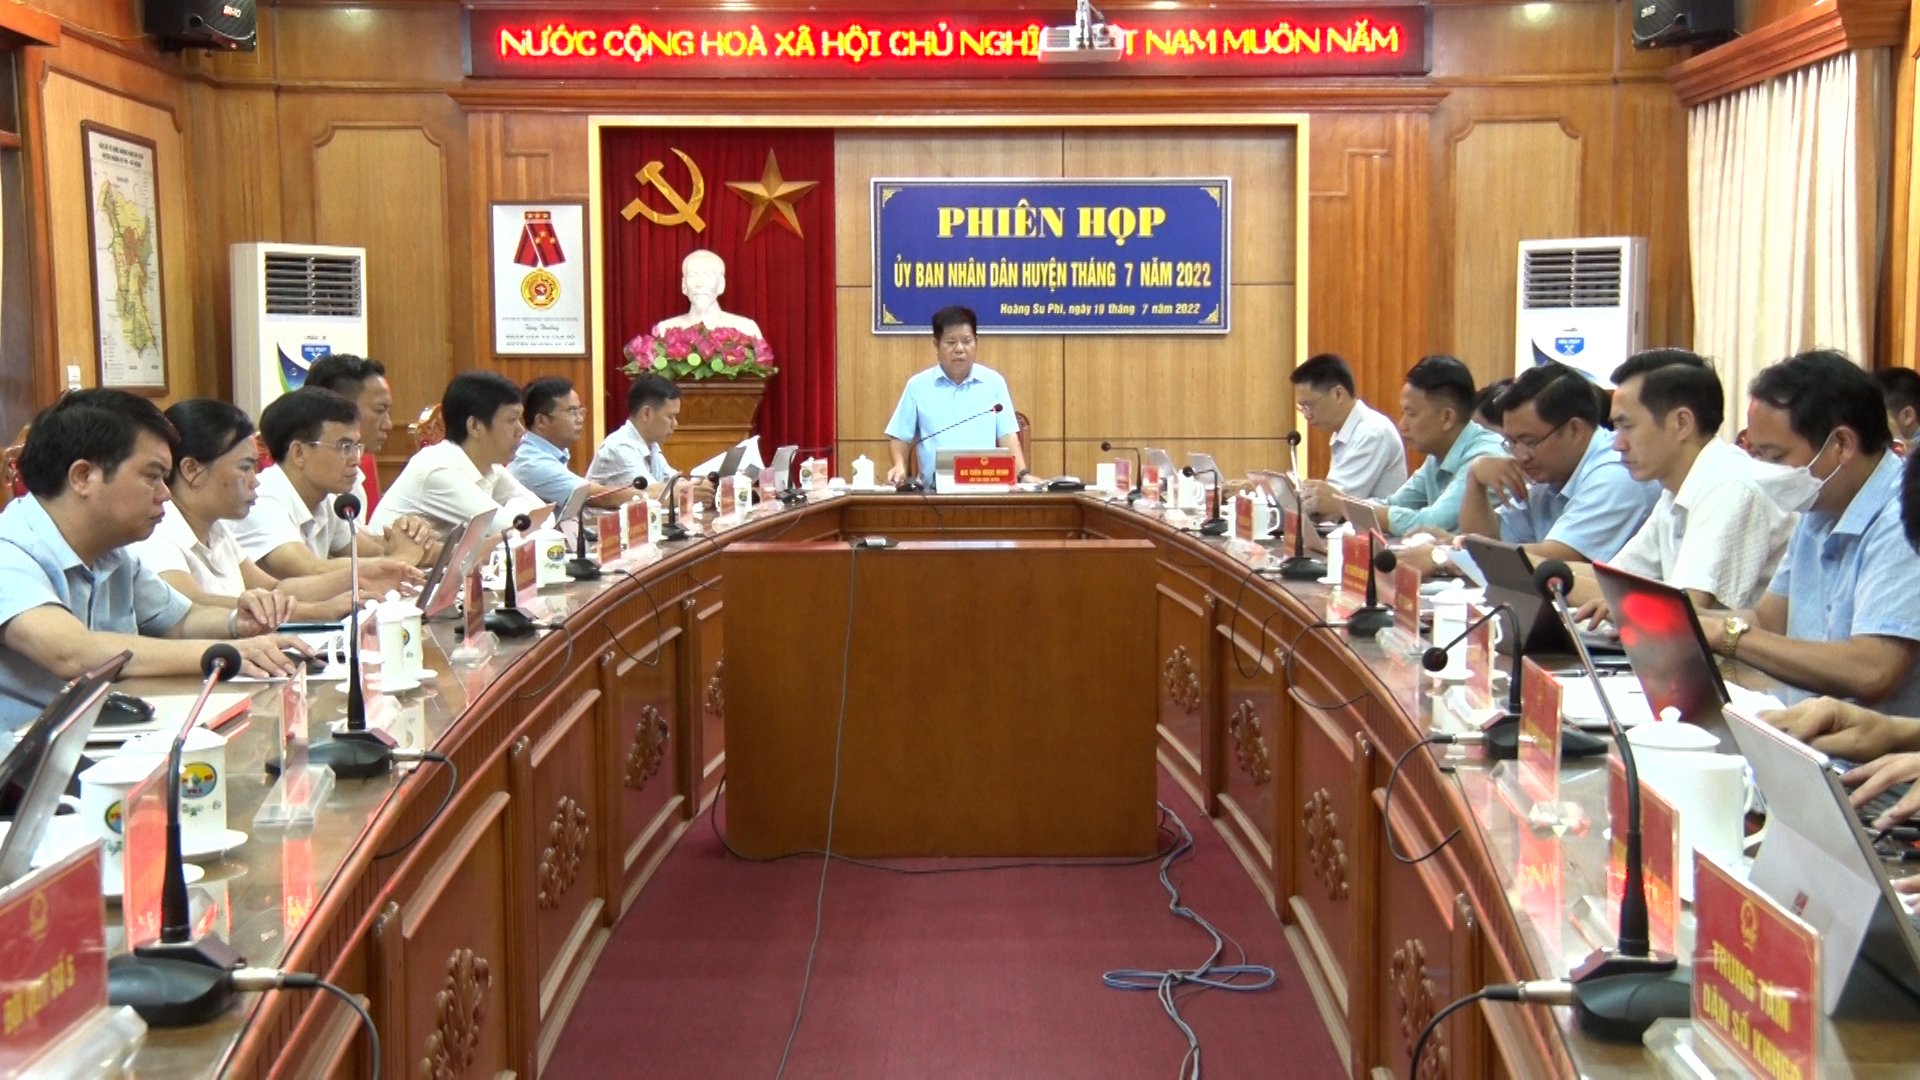 Phiên họp thành viên UBND huyện Hoàng Su Phì tháng 7 năm 2022